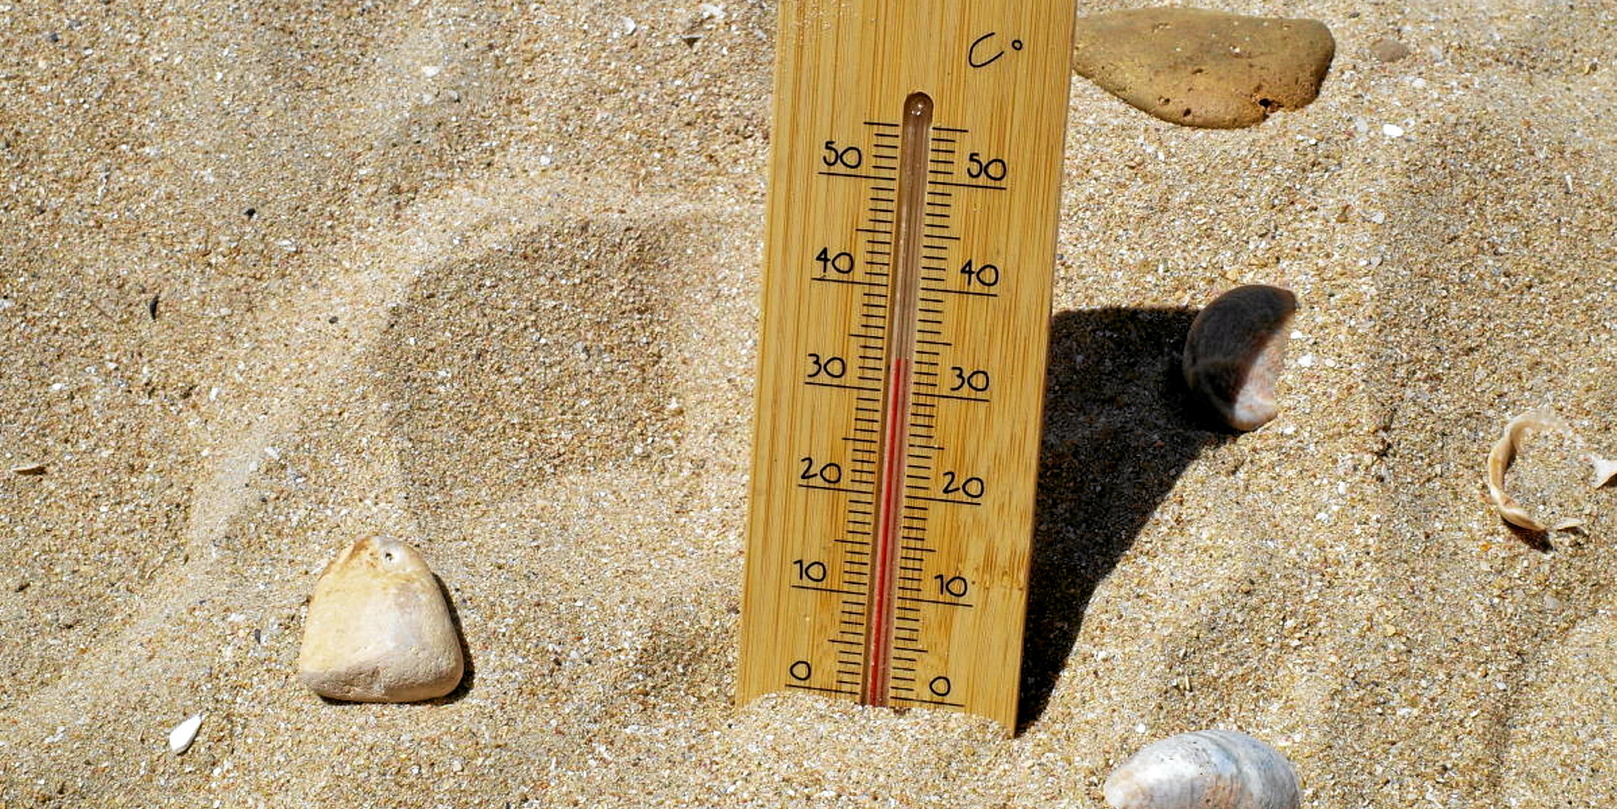 Image Des Thermomètres Météorologiques, Mesure De La Chaleur Et Co